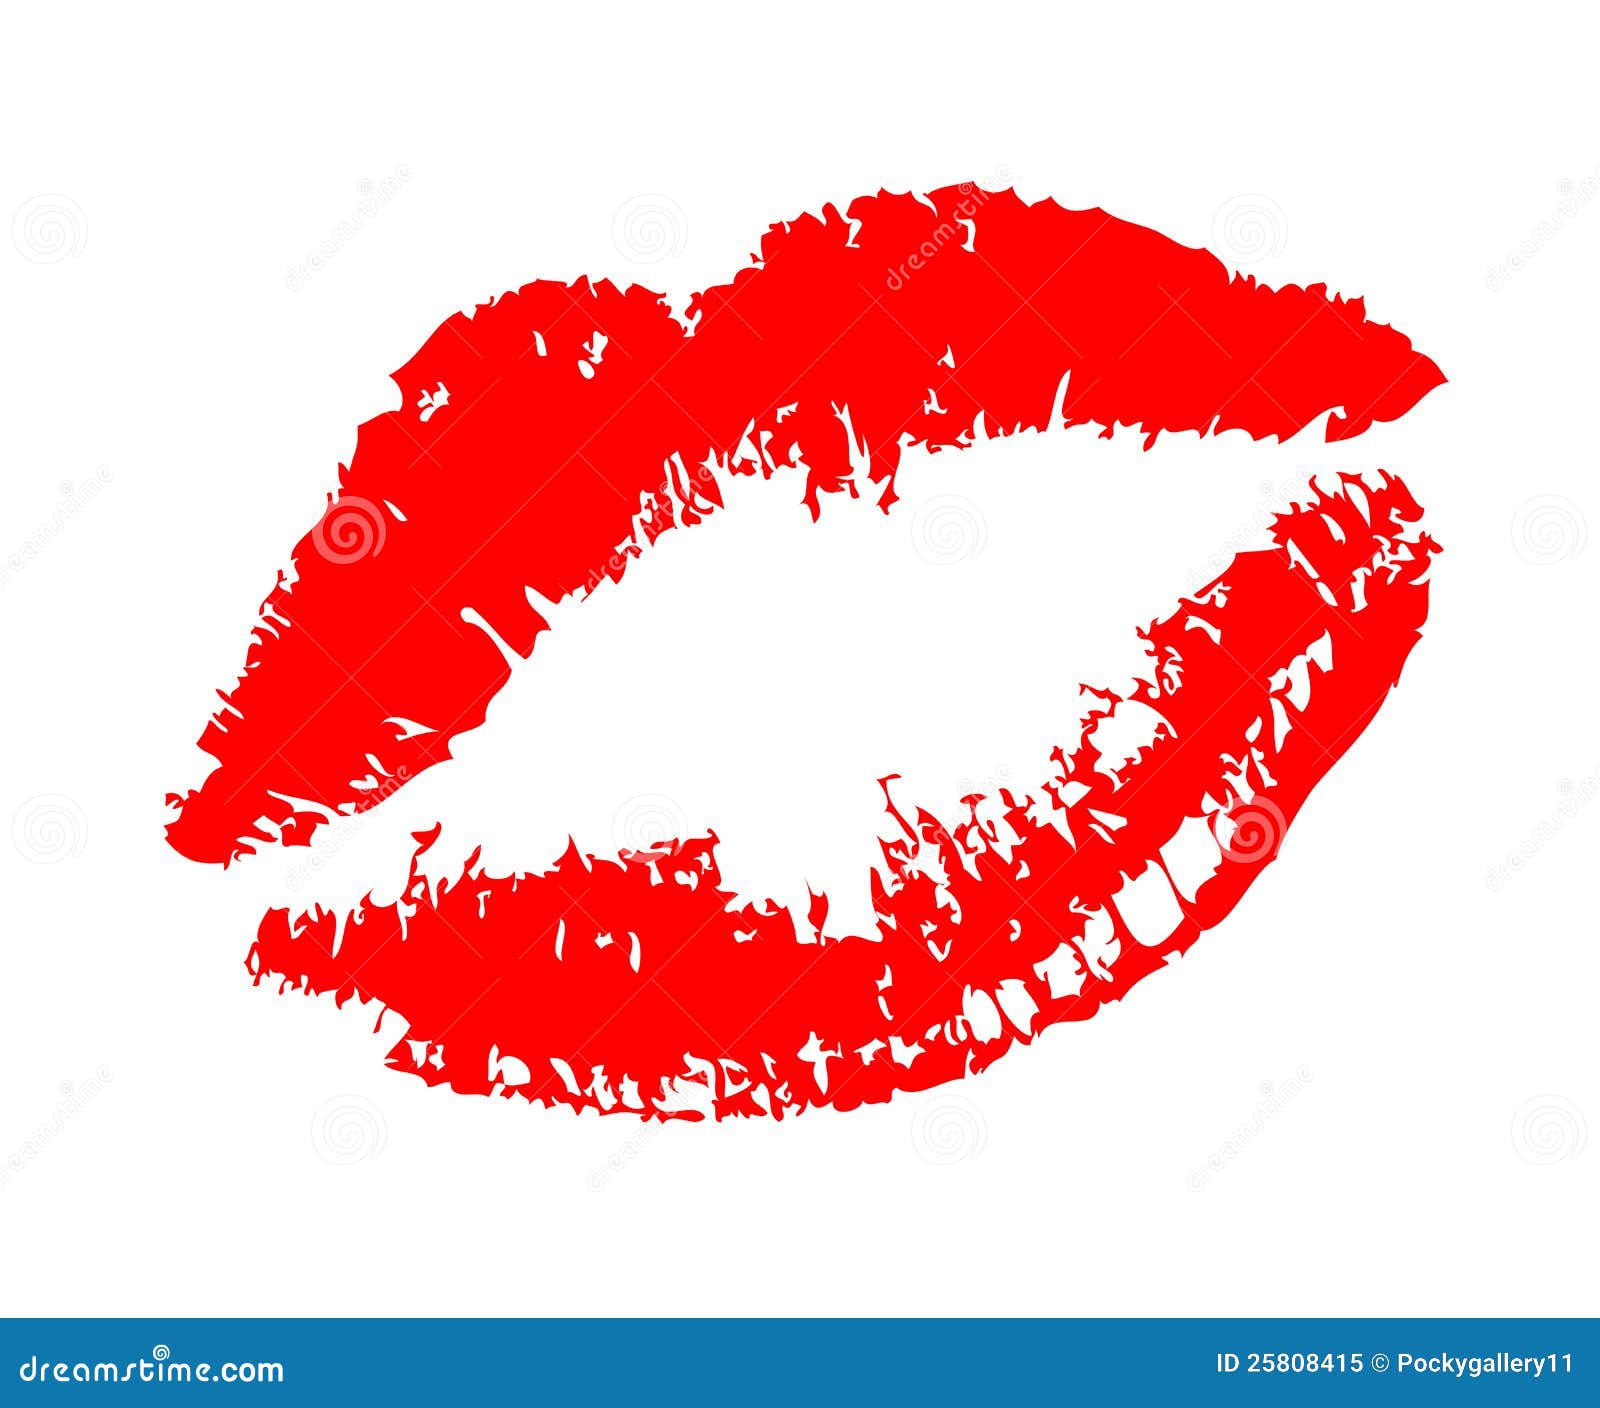 clipart lipstick kiss - photo #23